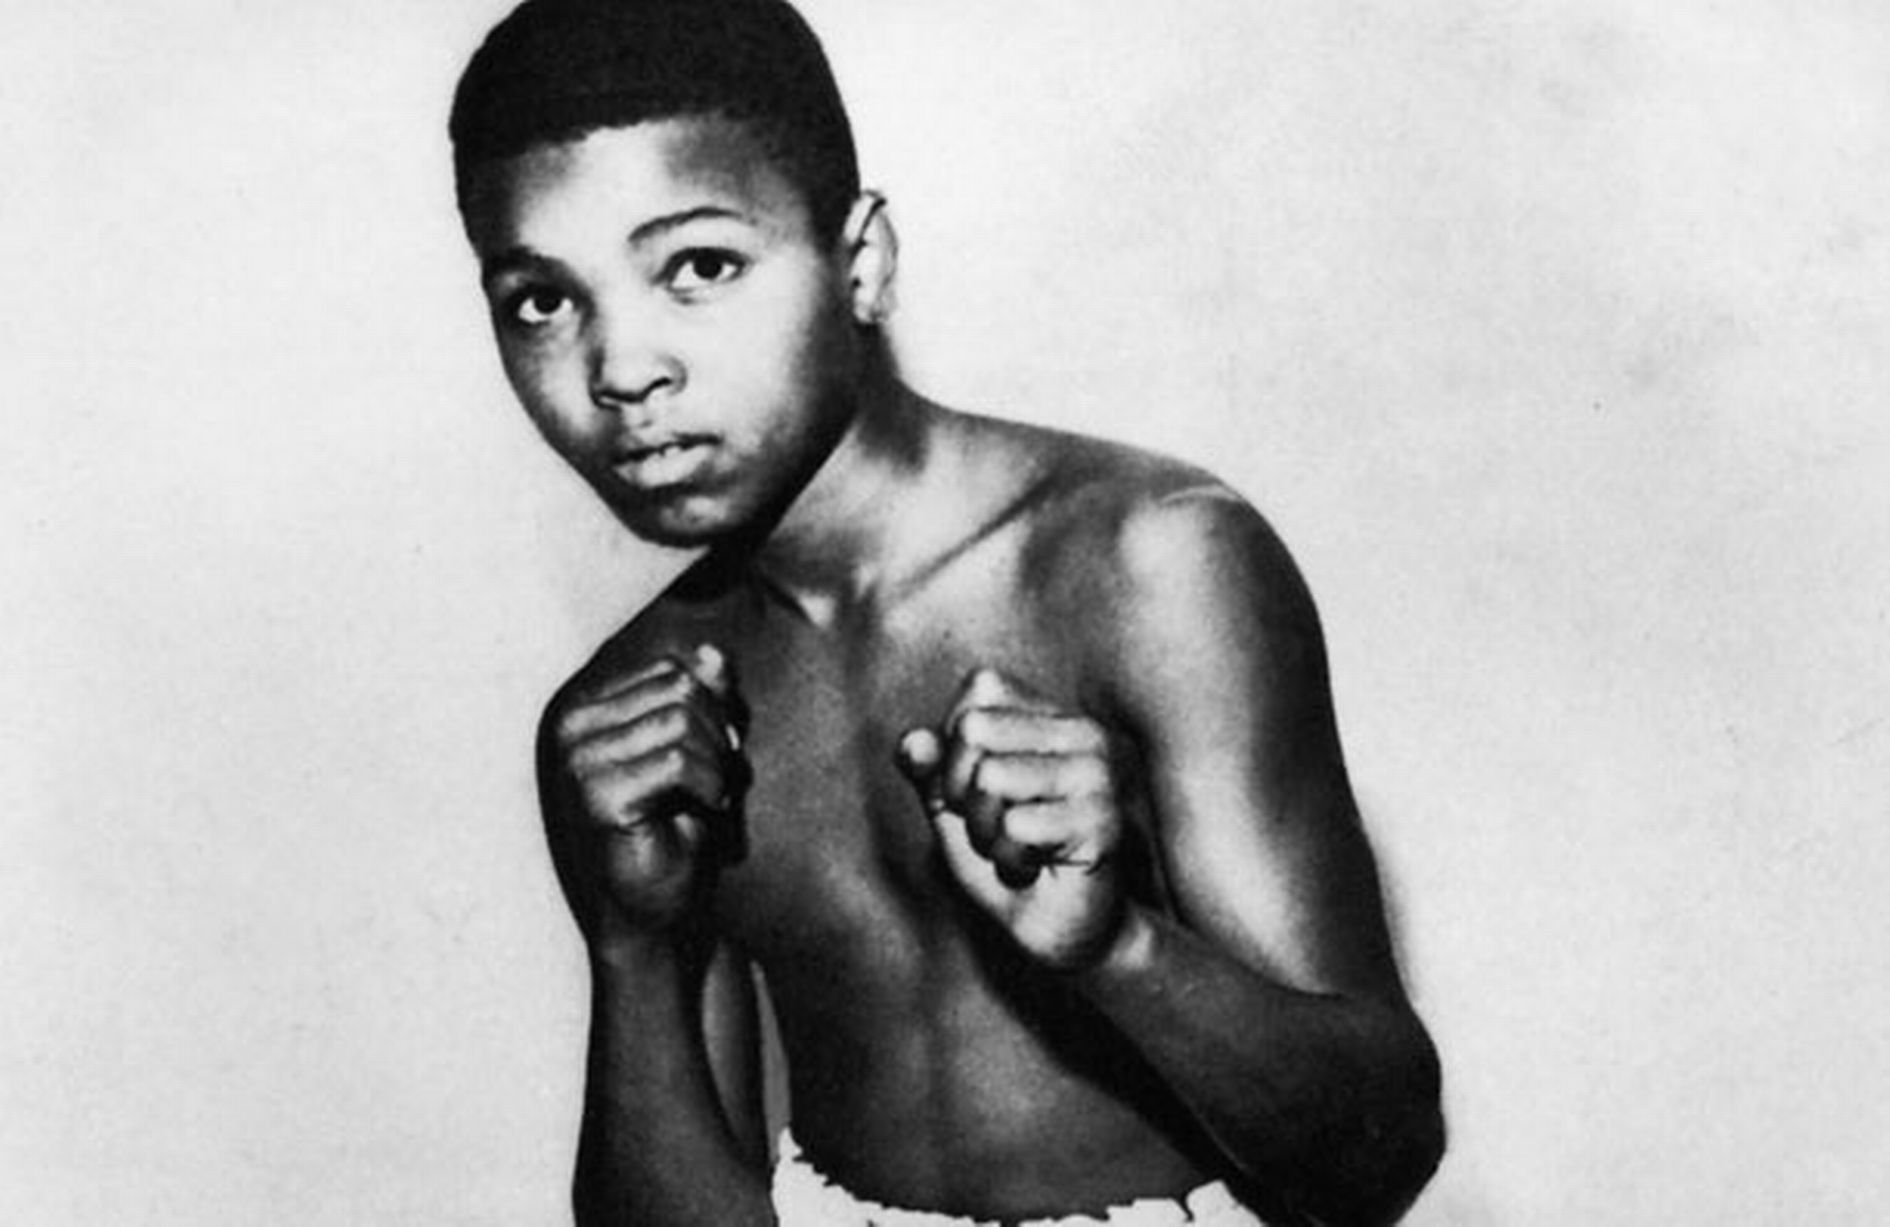 “Que tienes pensado hacer cuando te retires del boxeo”: la maravillosa respuesta de Muhammad Ali *Video*